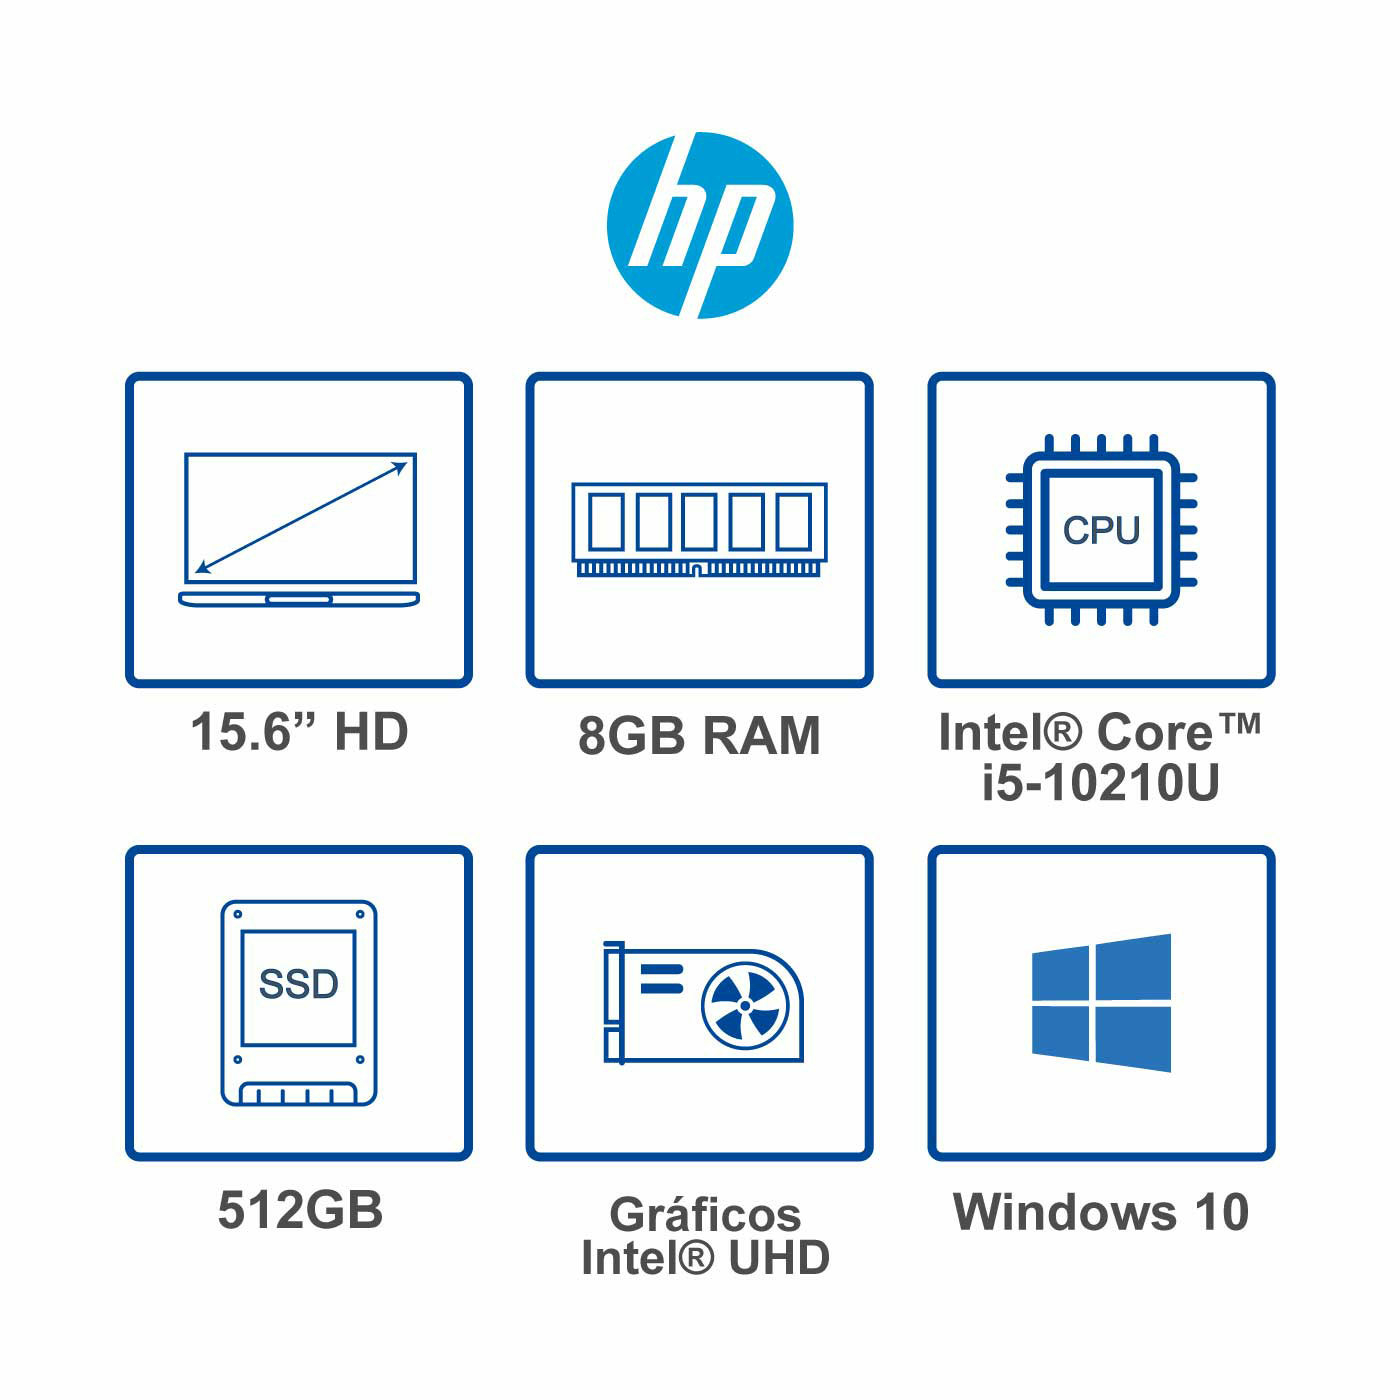 Computador Portatil HP 15.6" Pulgadas dw1066la - INTEL Core i5 - RAM 8GB - Disco SSD 512 GB - Plata